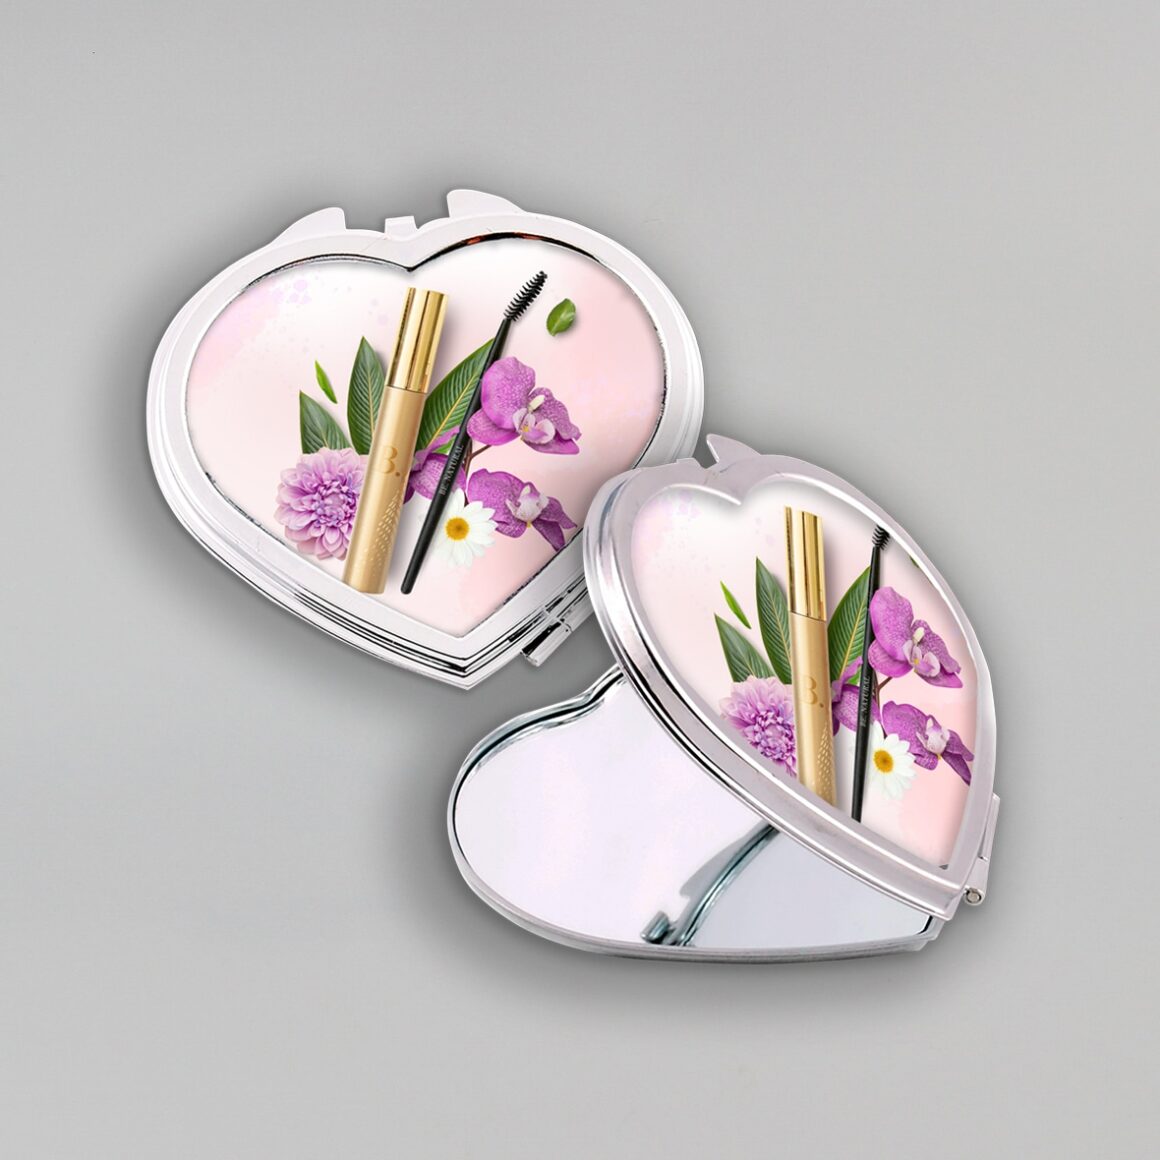 A képen két szív alakú sminkes tükör látható. Az egyik nyitva van, a másik zárva. A tükör fedelén lila virágok és smink kellékek láthatóak, ezzel lett dekorálva a termék.